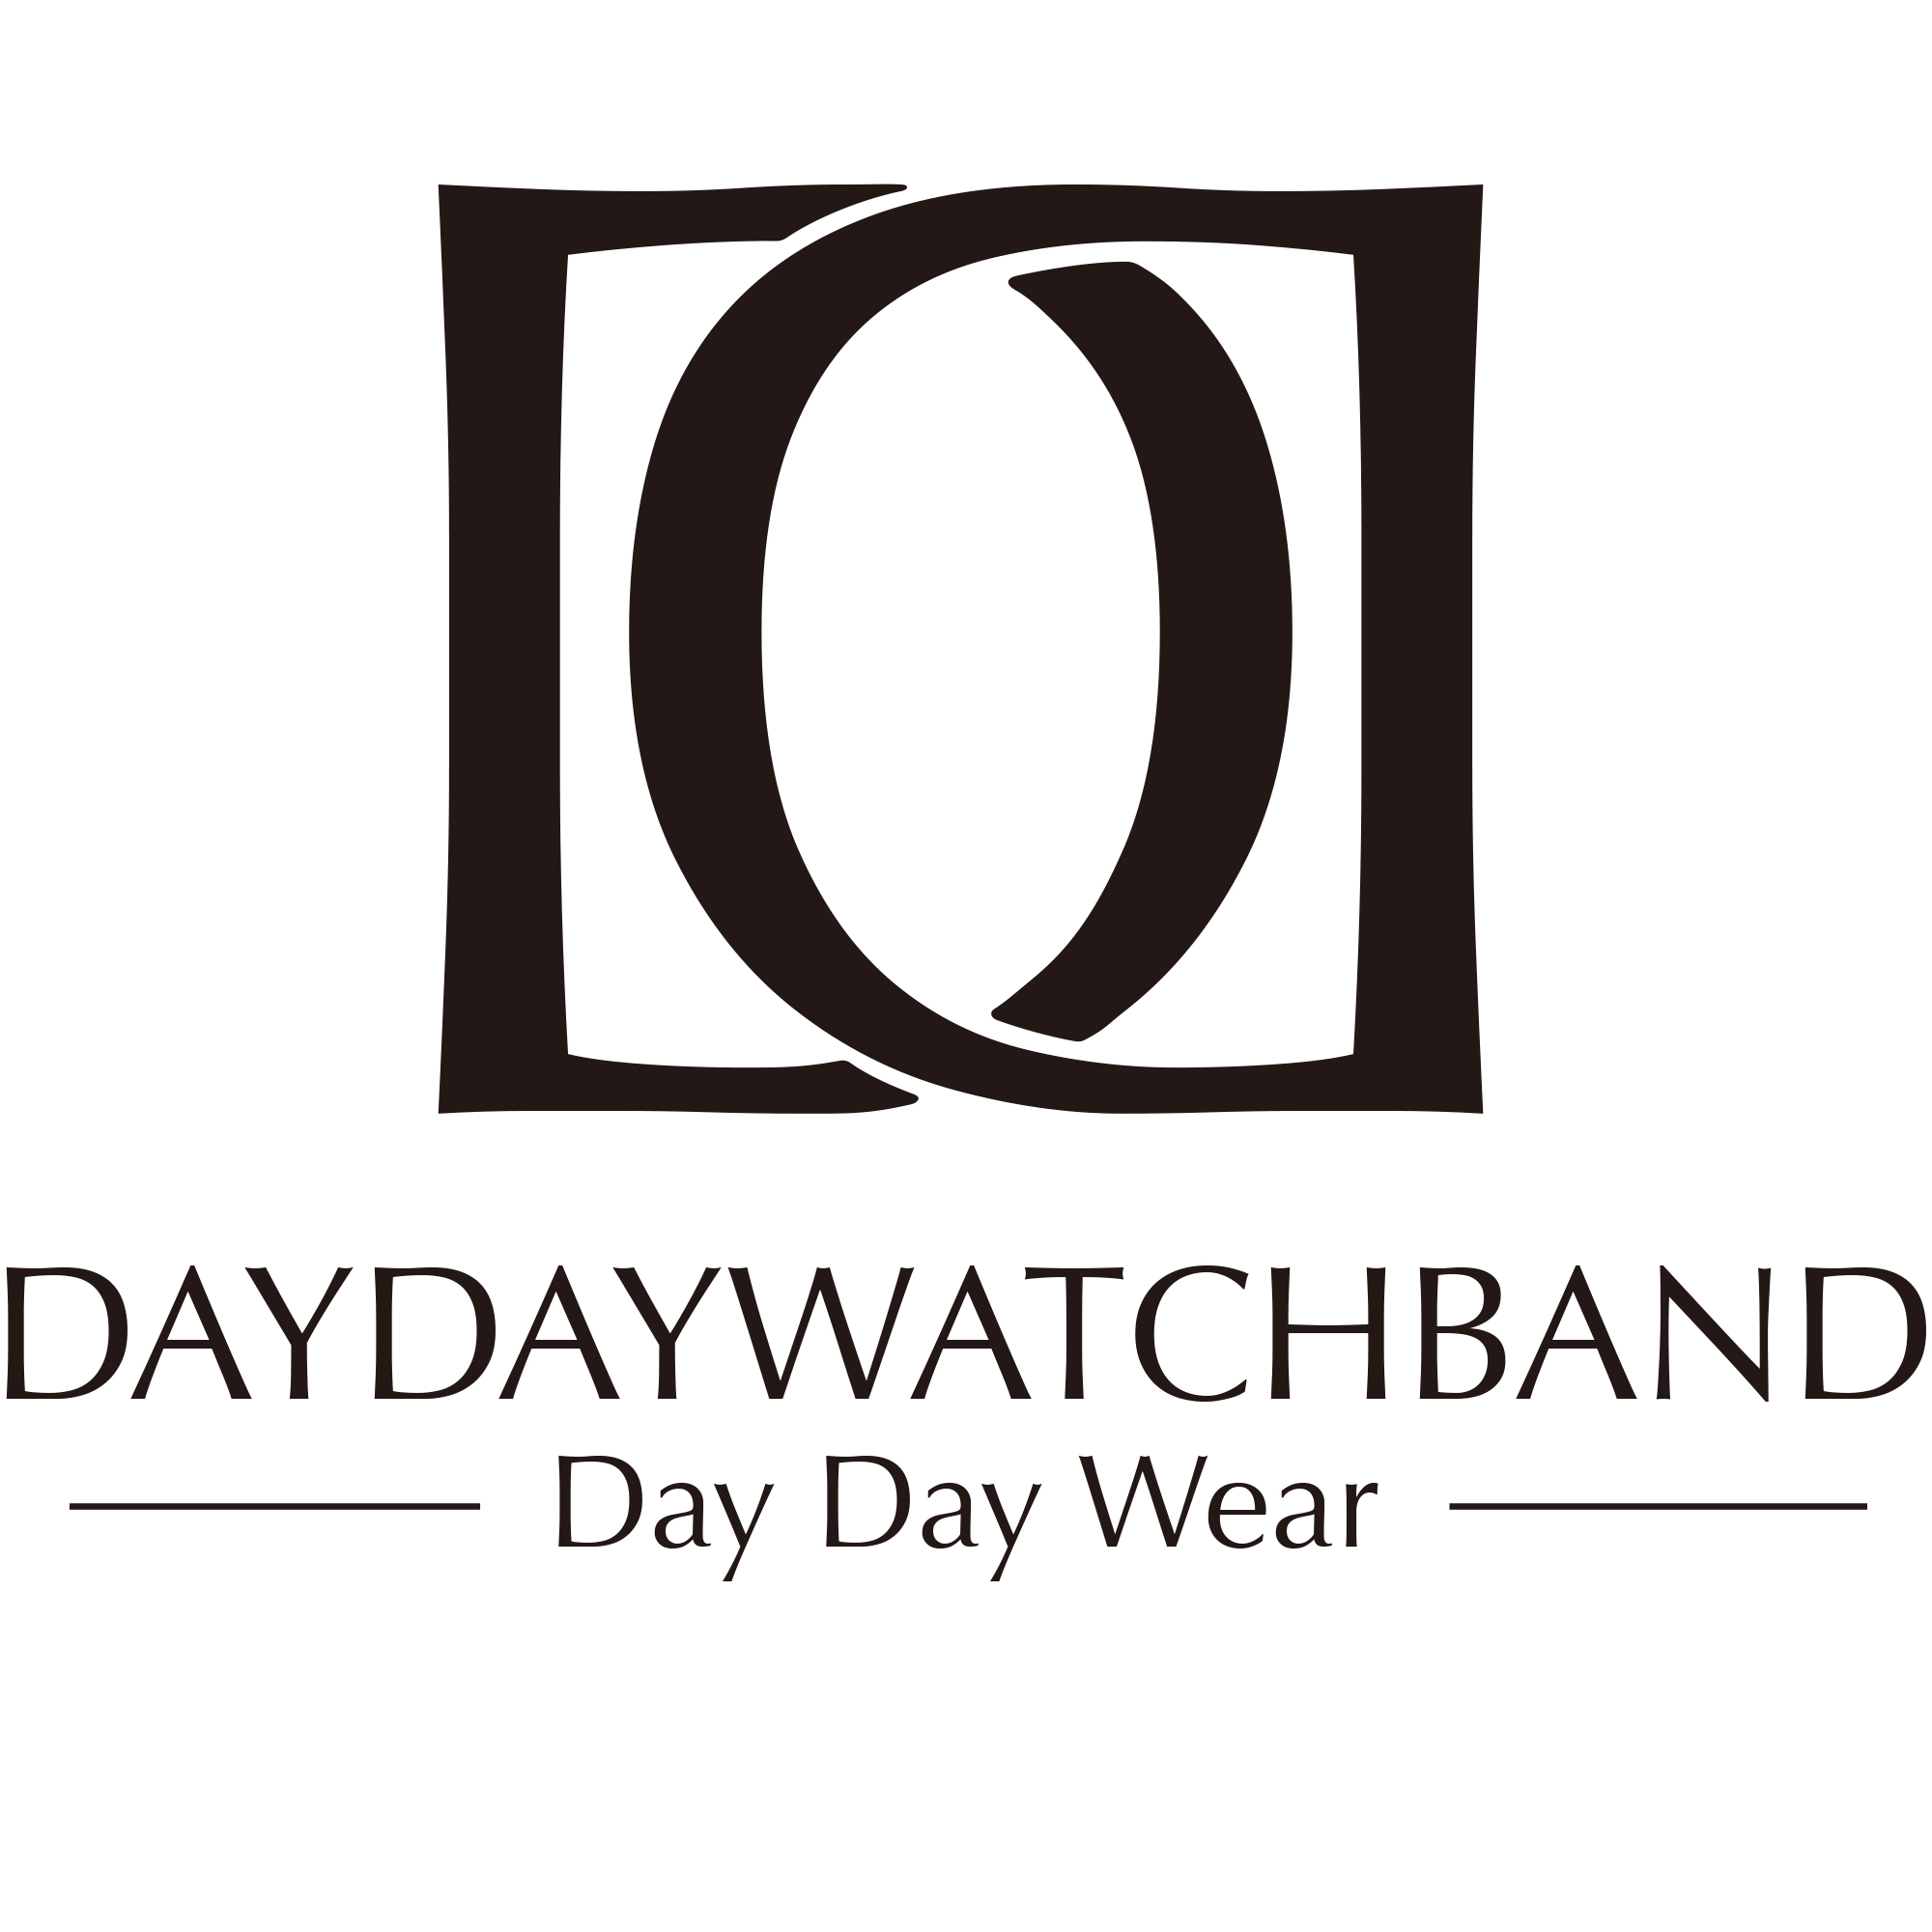 Daydaywatchband